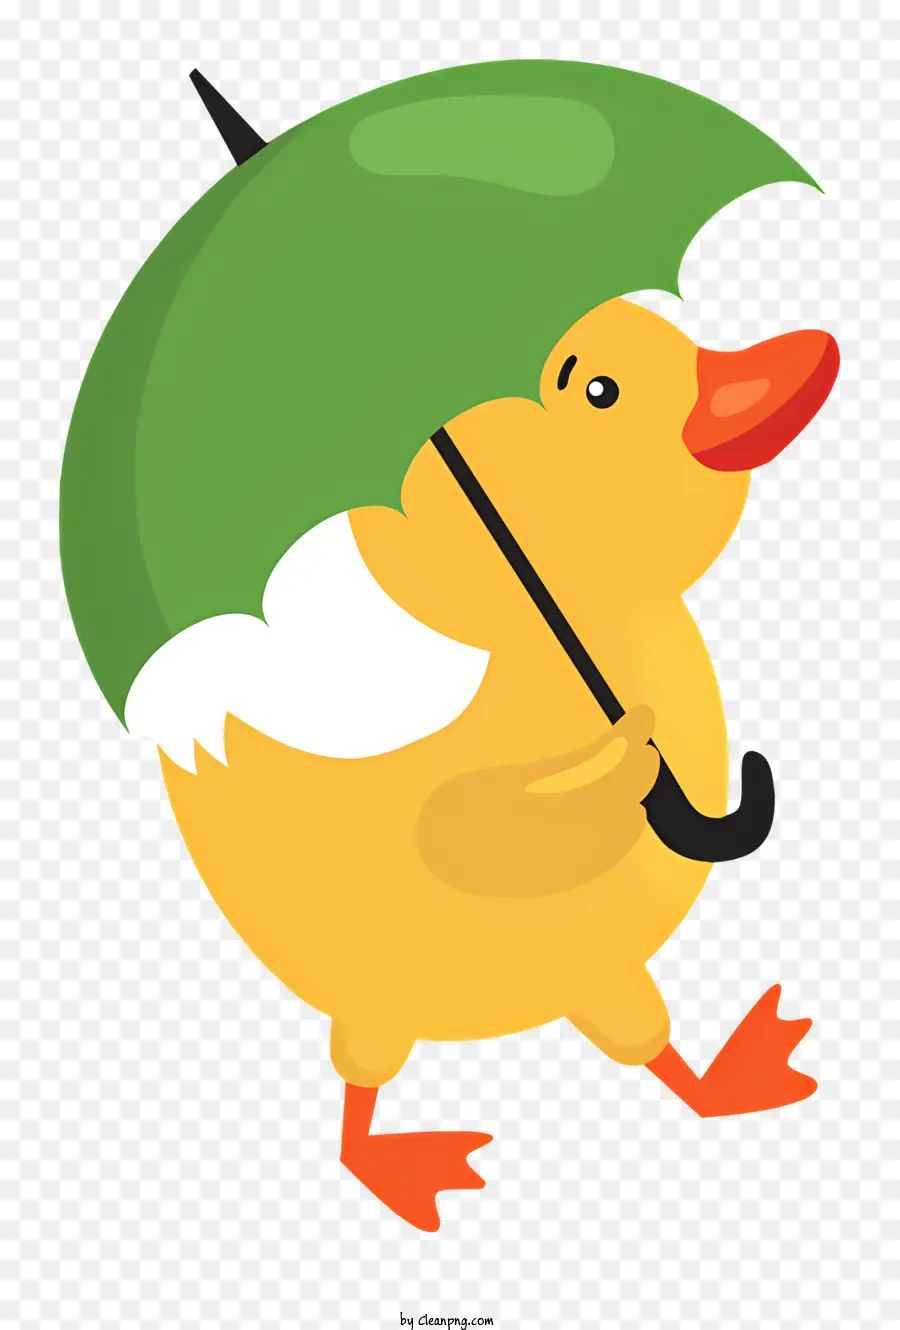 gelbe Ente Grüne Regenschirm Ente wandern schwarze Schnabel braune Augen - Ente mit Regenschirm laufen; 
Gelb, grün, braun